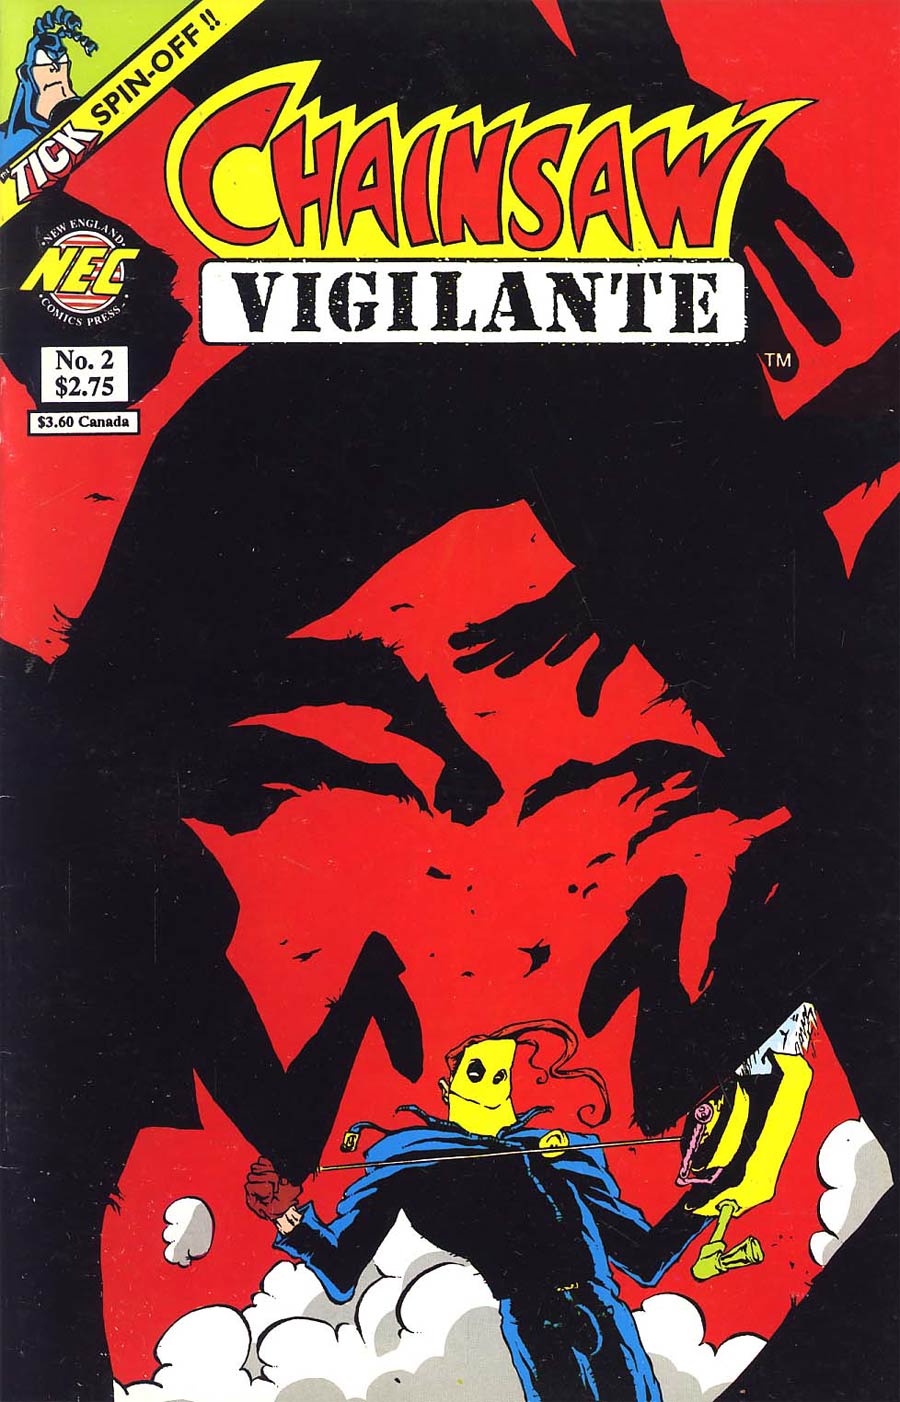 Chainsaw Vigilante #2